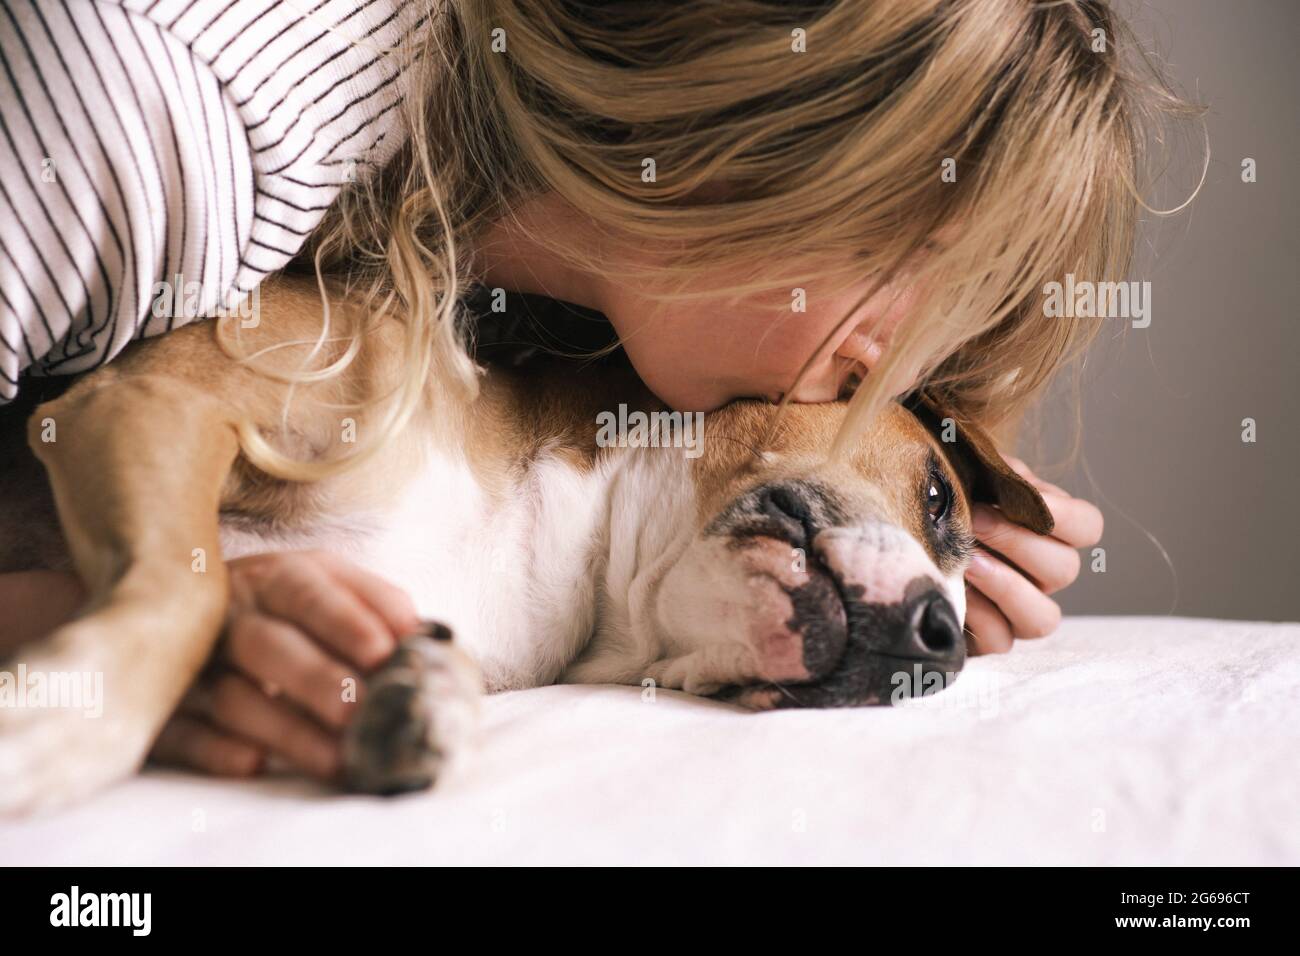 La giovane donna si trova vicino al suo cane e la bacia. Stile di vita affettivo con gli animali domestici Foto Stock